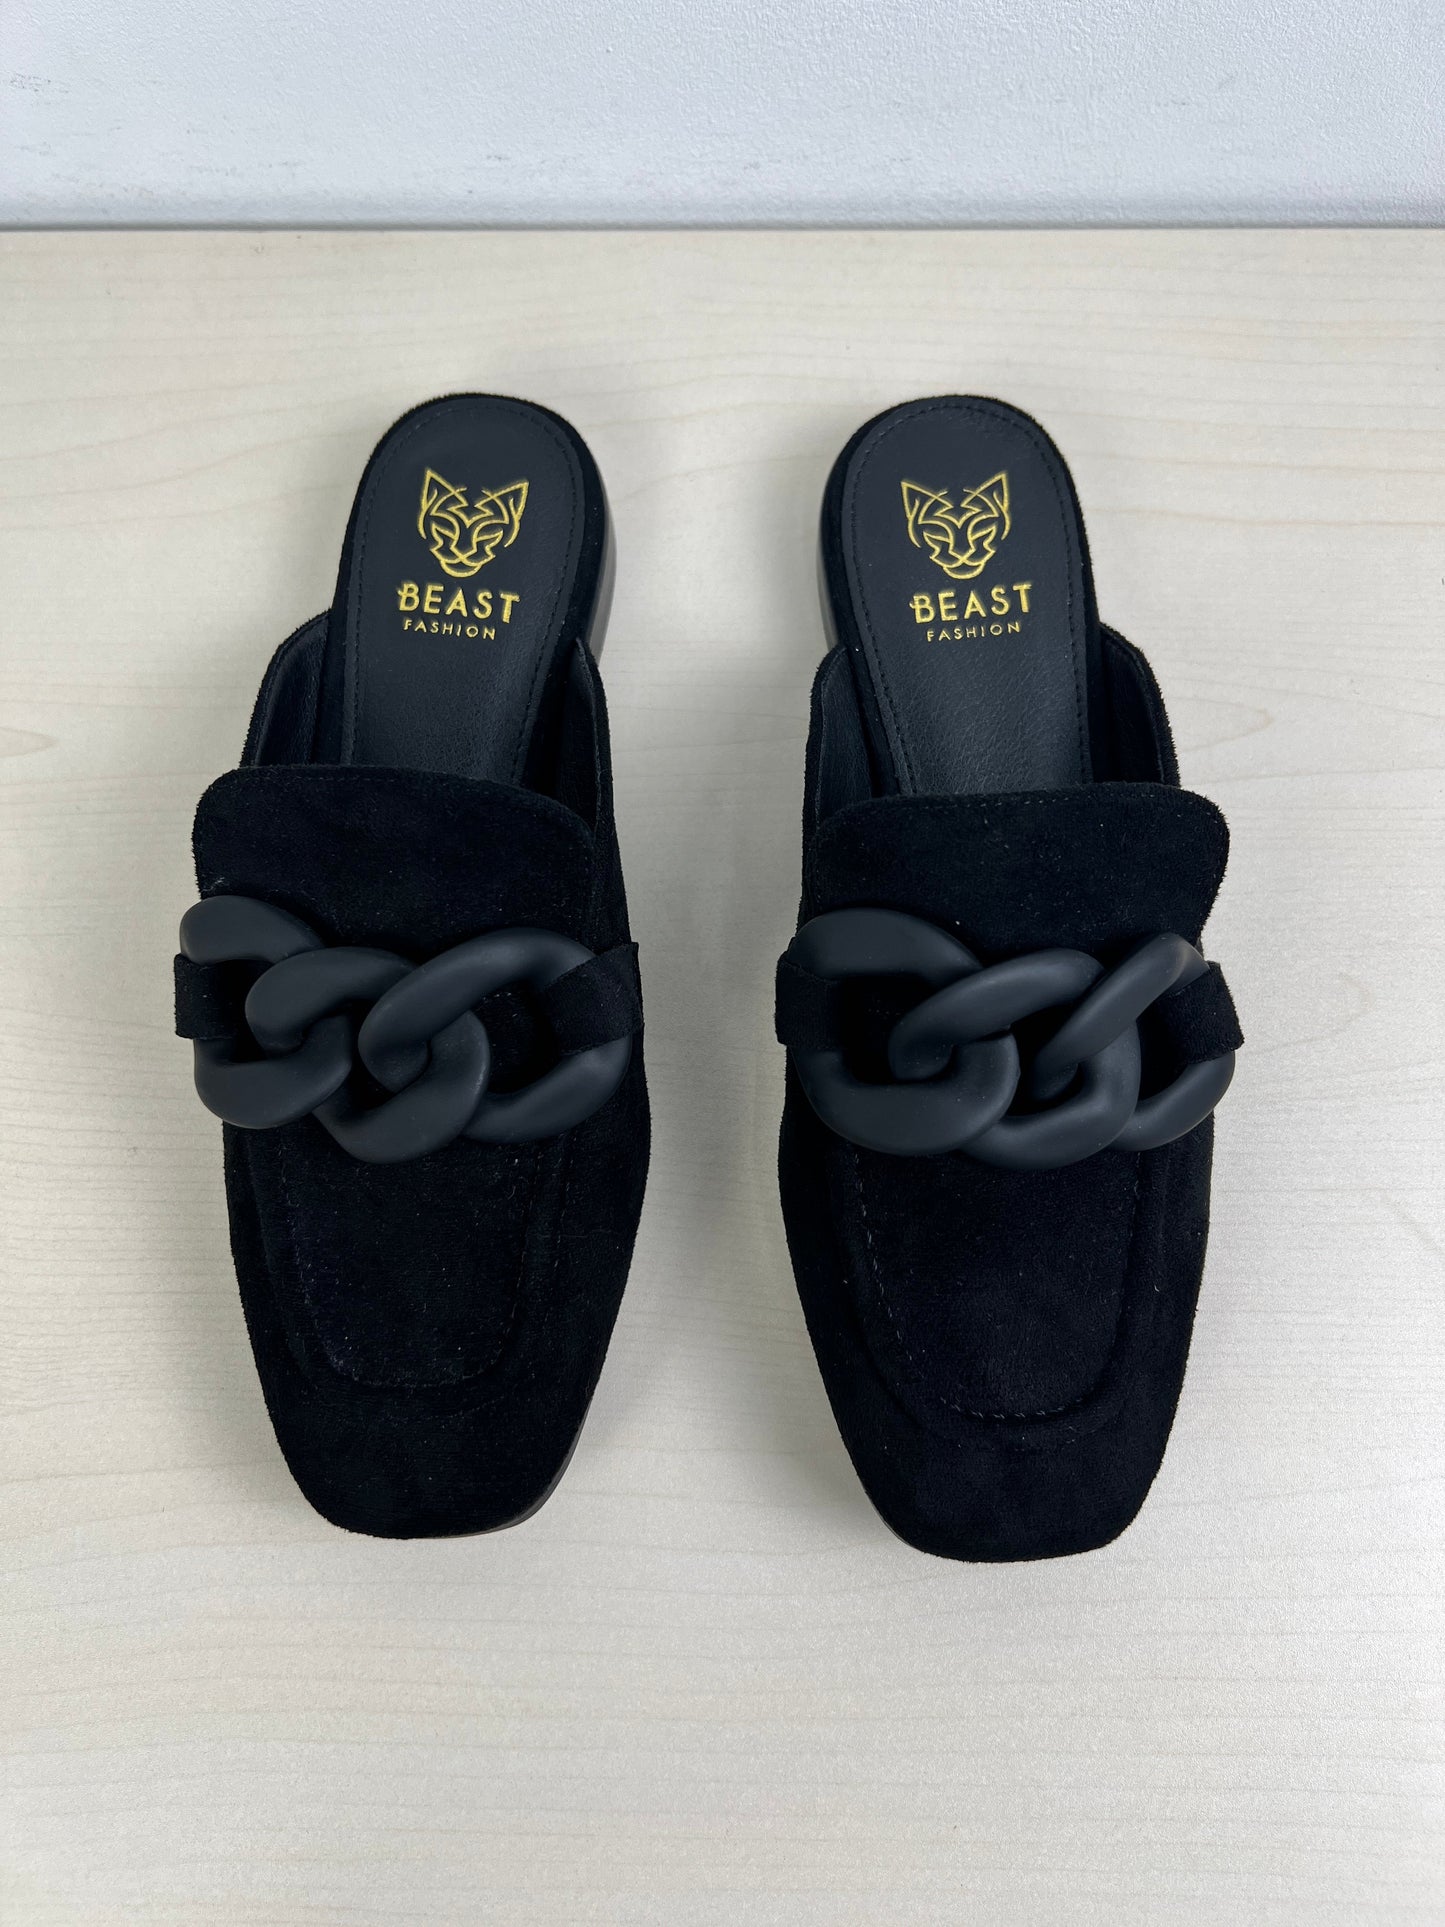 Black Shoes Flats Cmc, Size 6